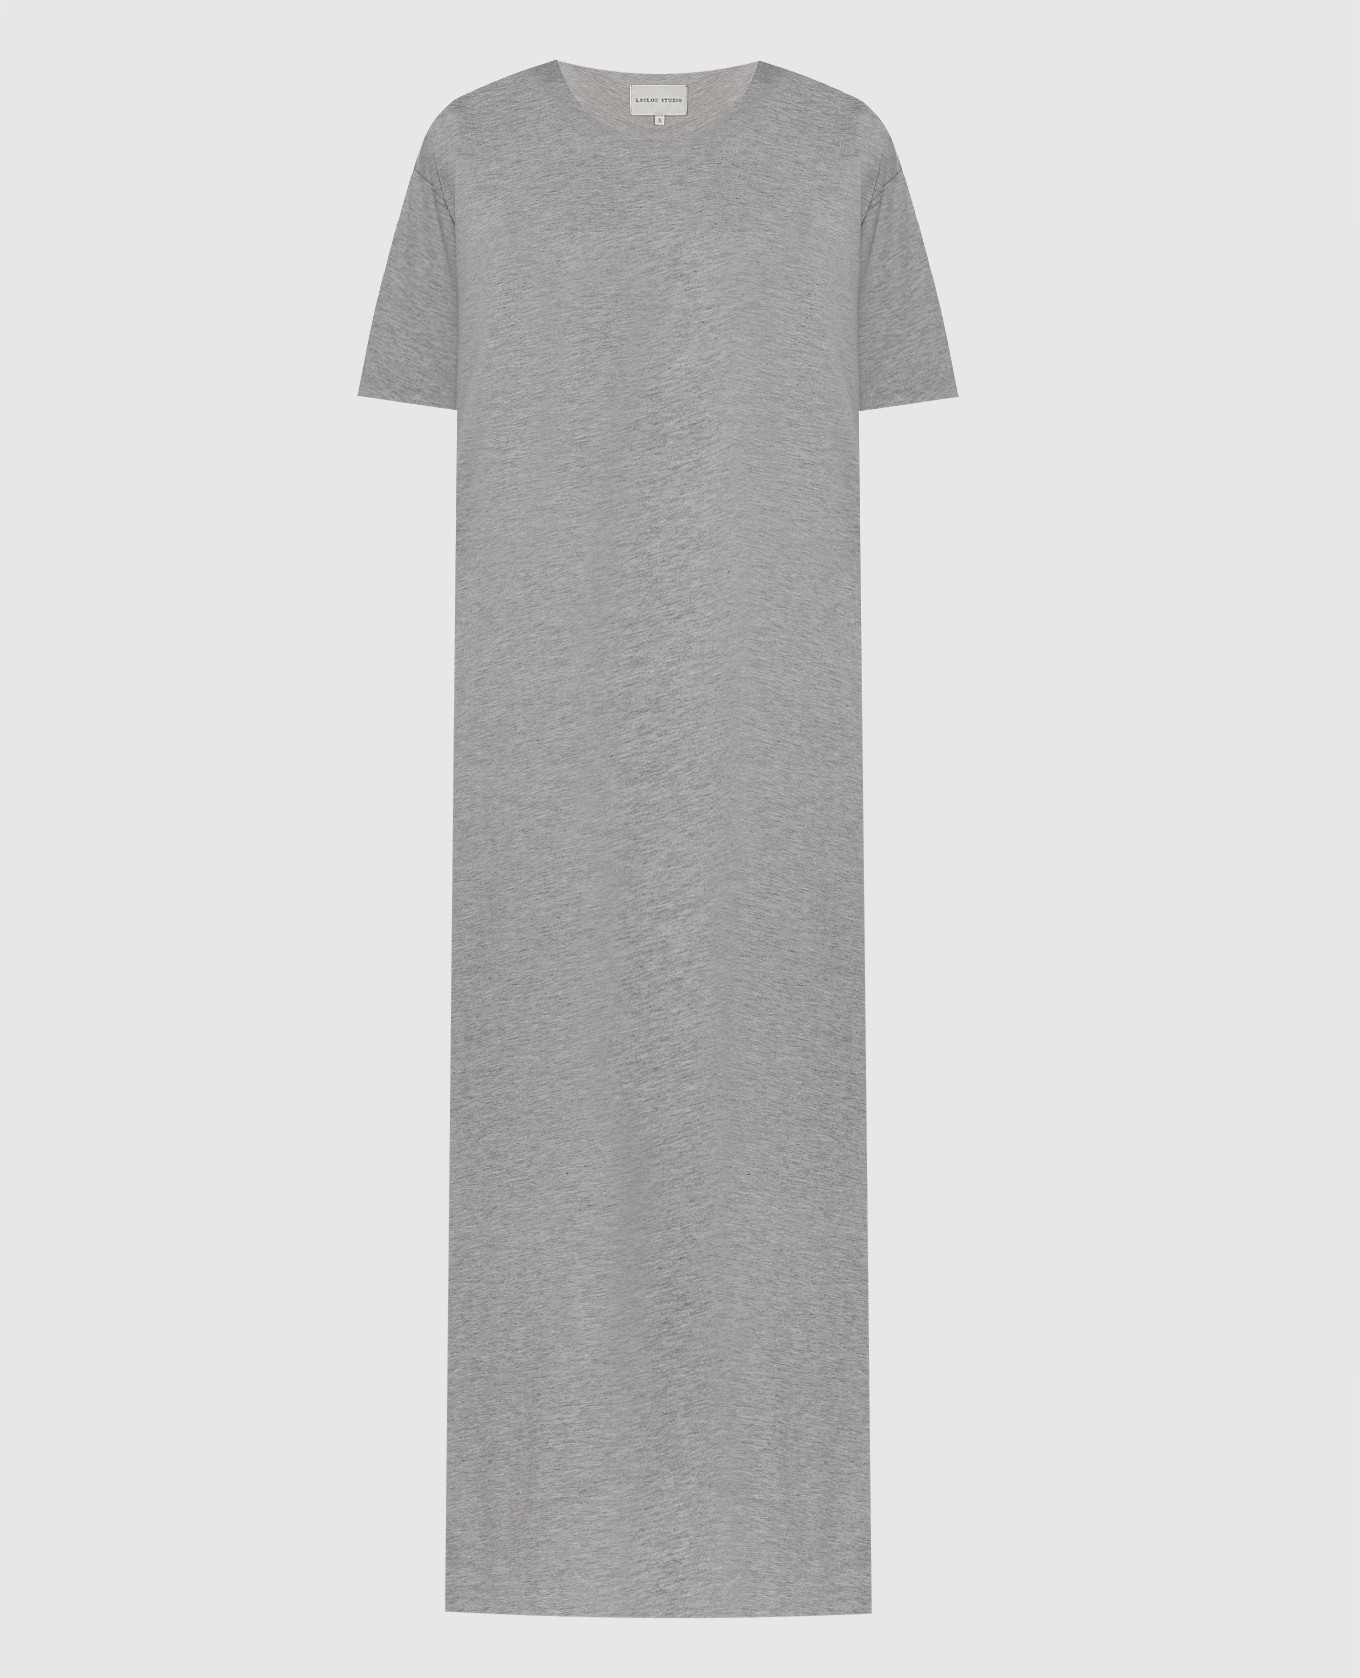 Серое меланжевое платье миди SARUE с вышивкой логотипа